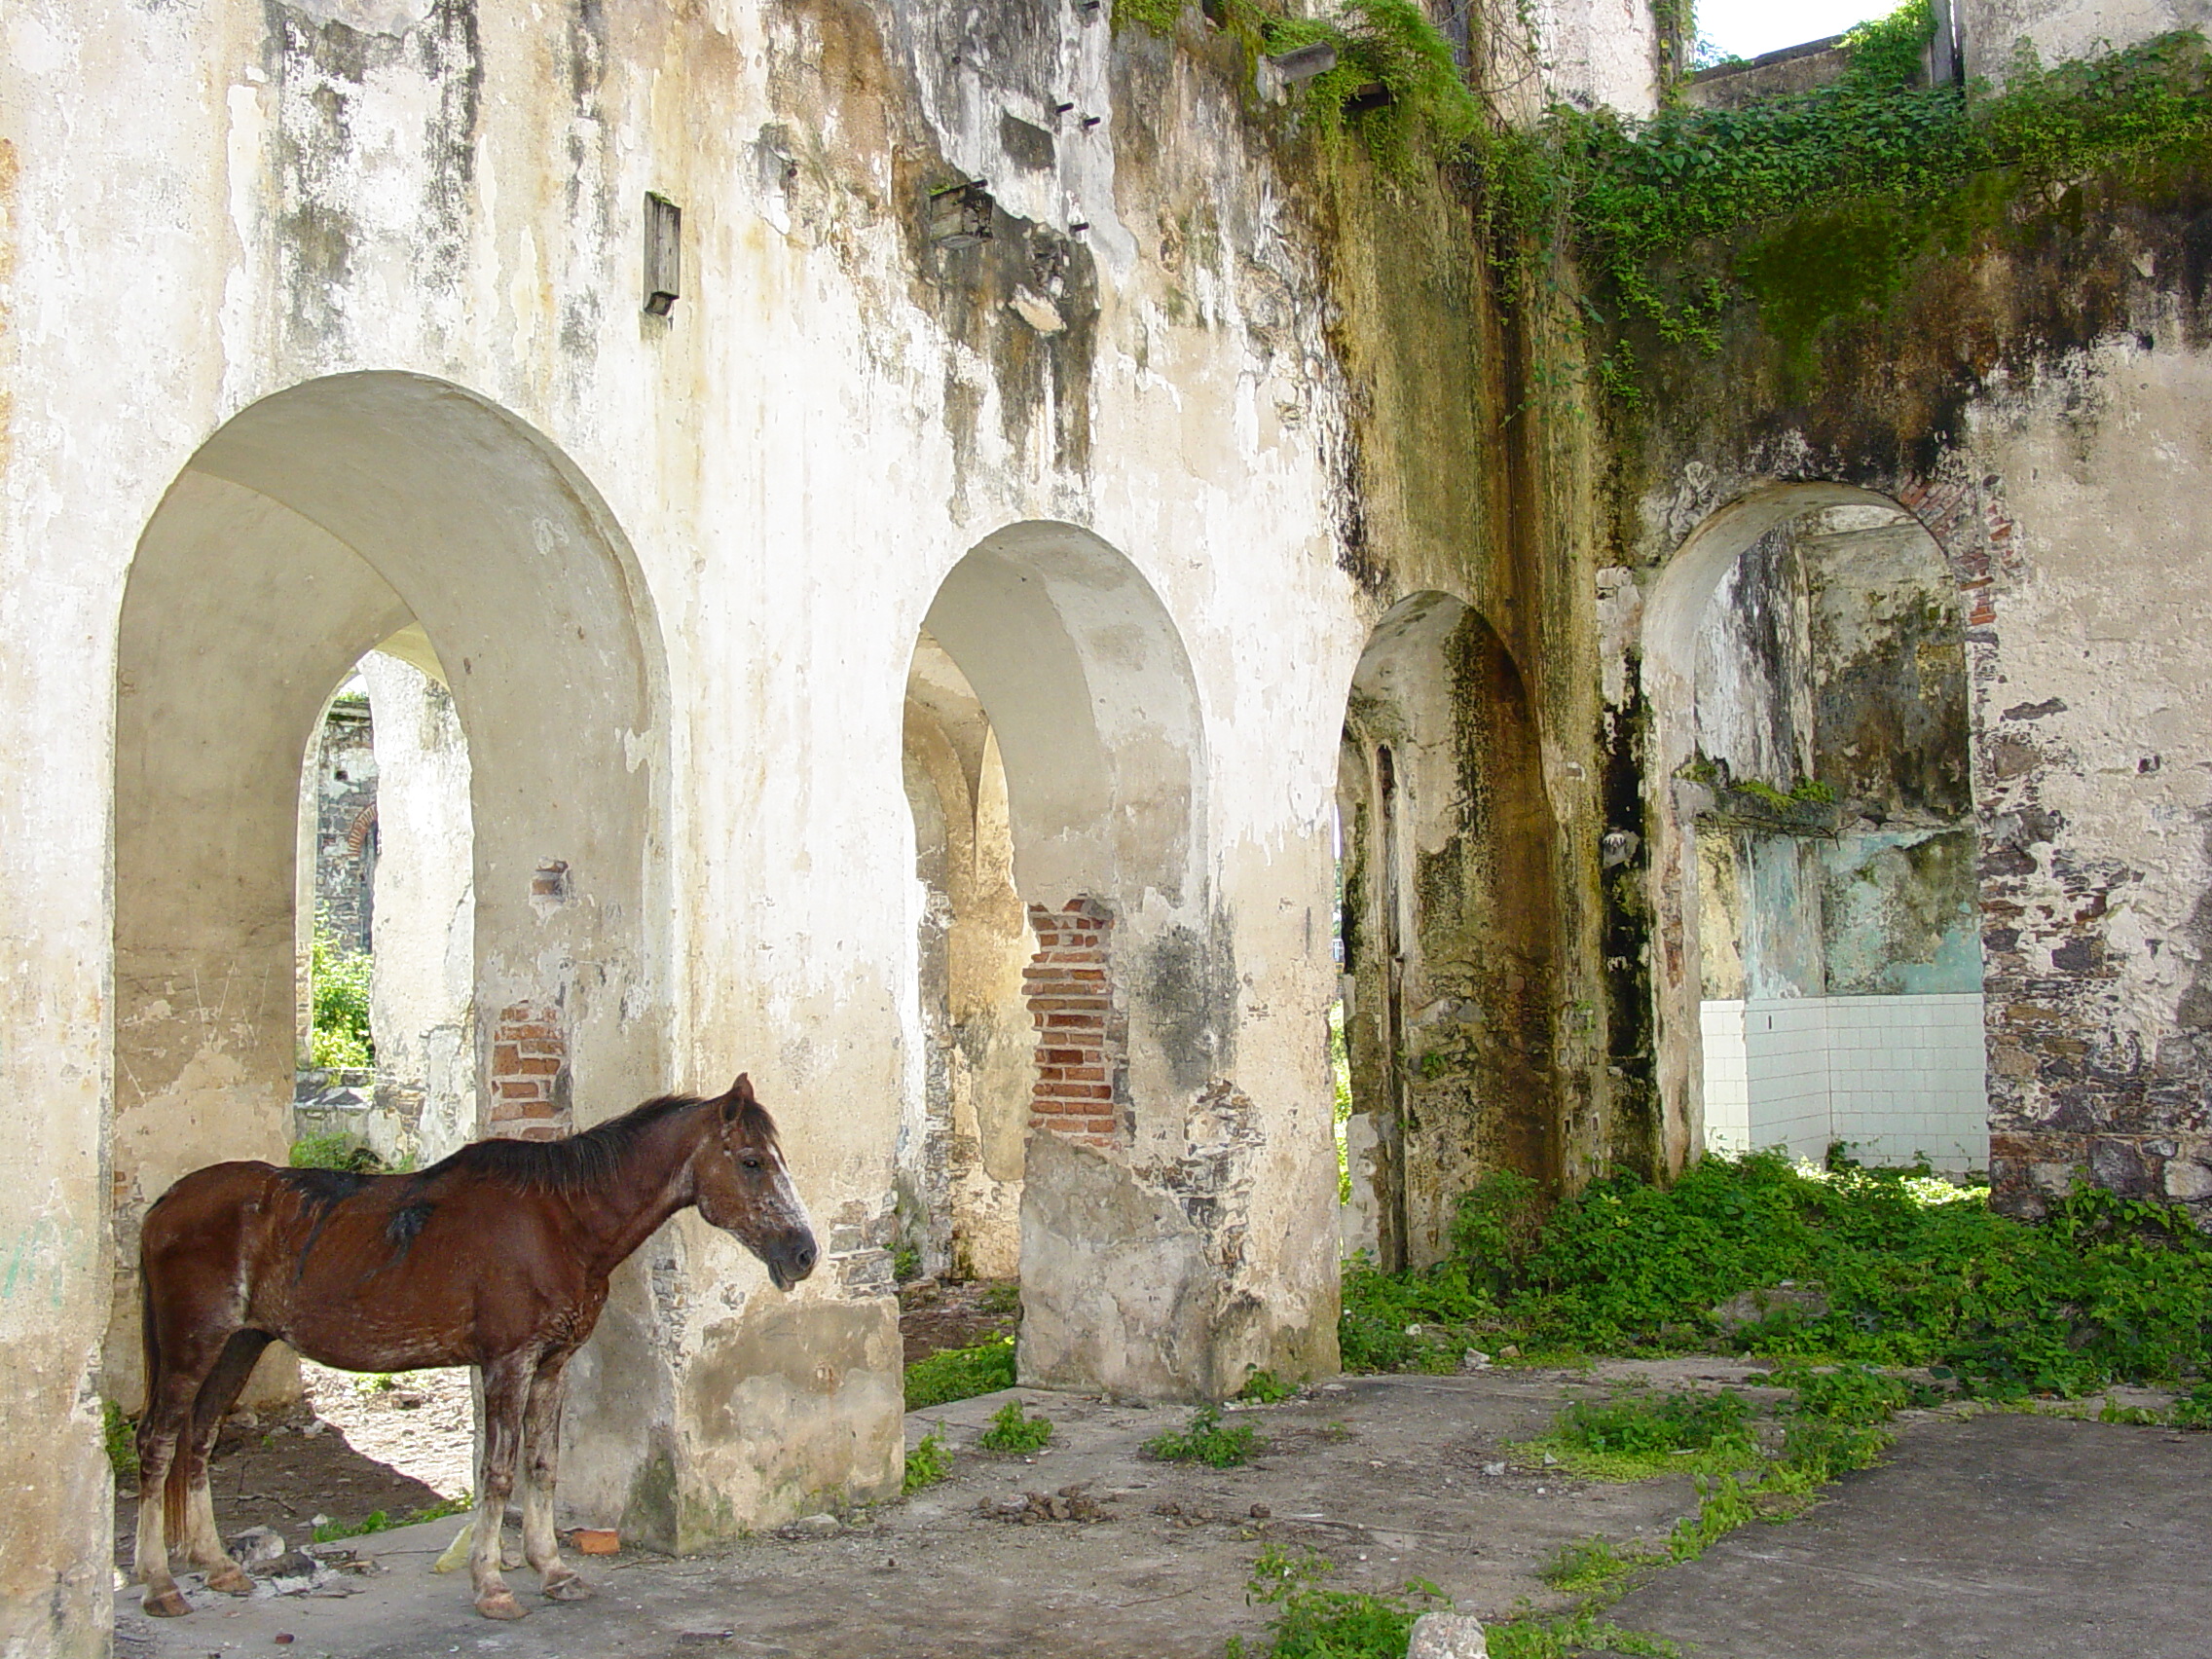 Ruined Sugar Mill in Santo Amaro - Near Salvador - Bahia - Brazil 02